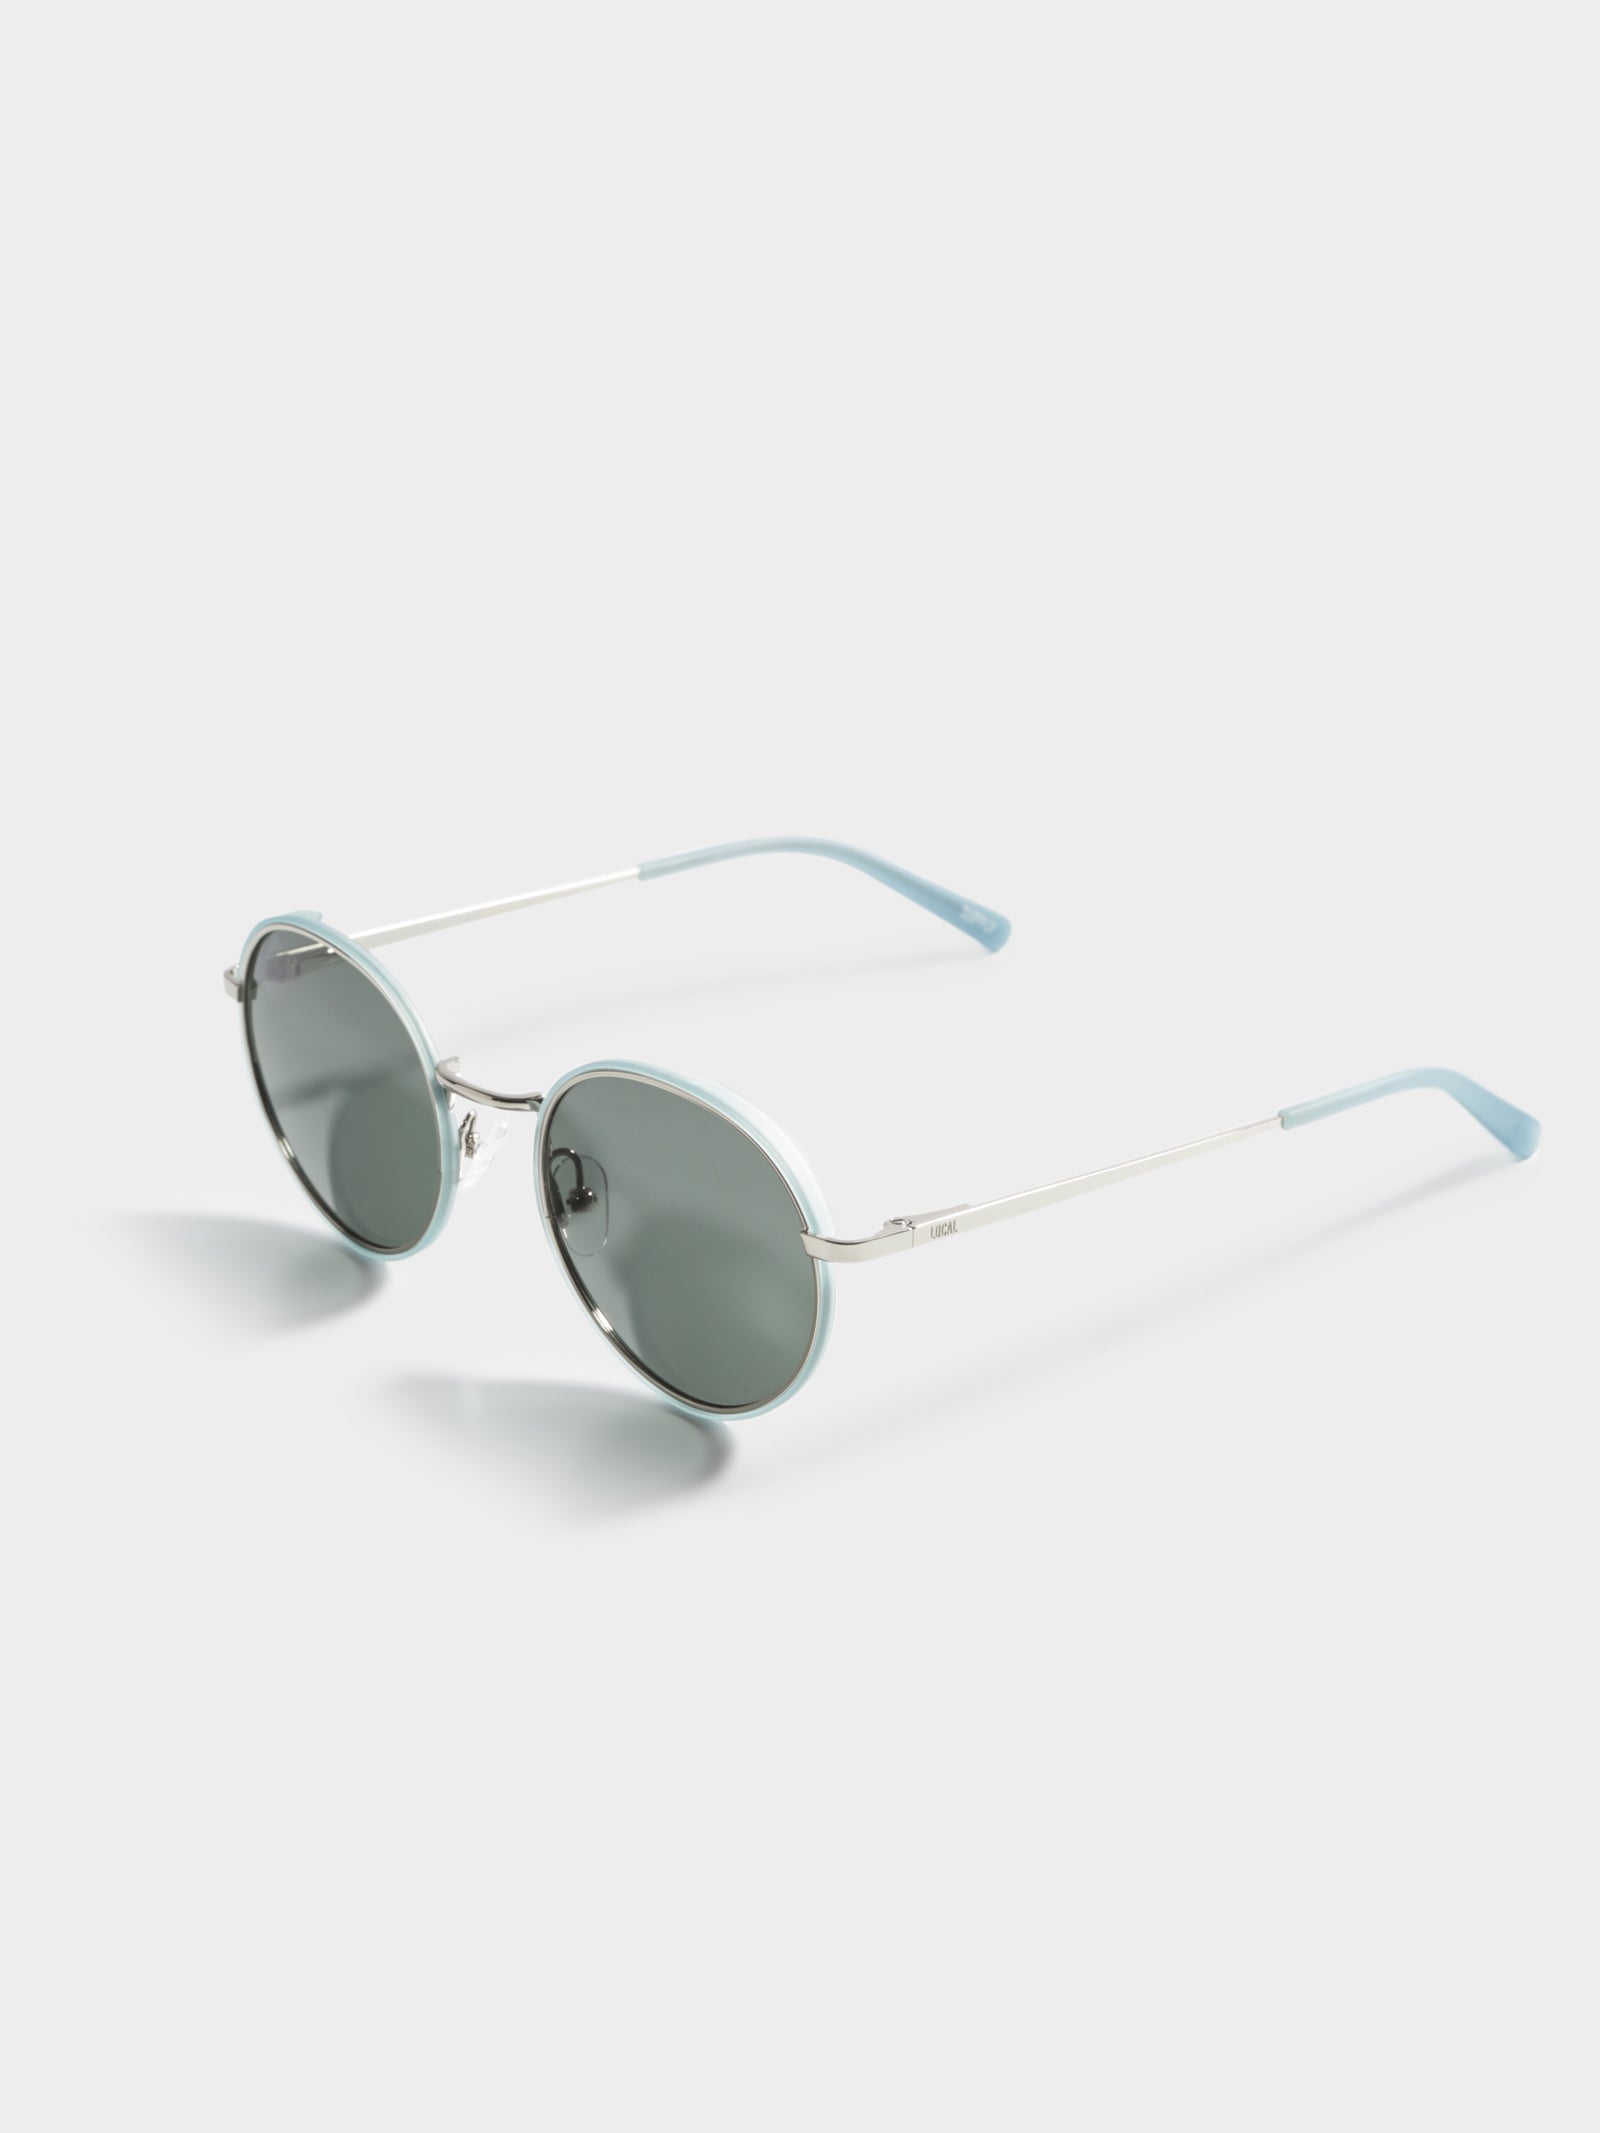 Paris Polarised Sunglasses in Ocean Blue